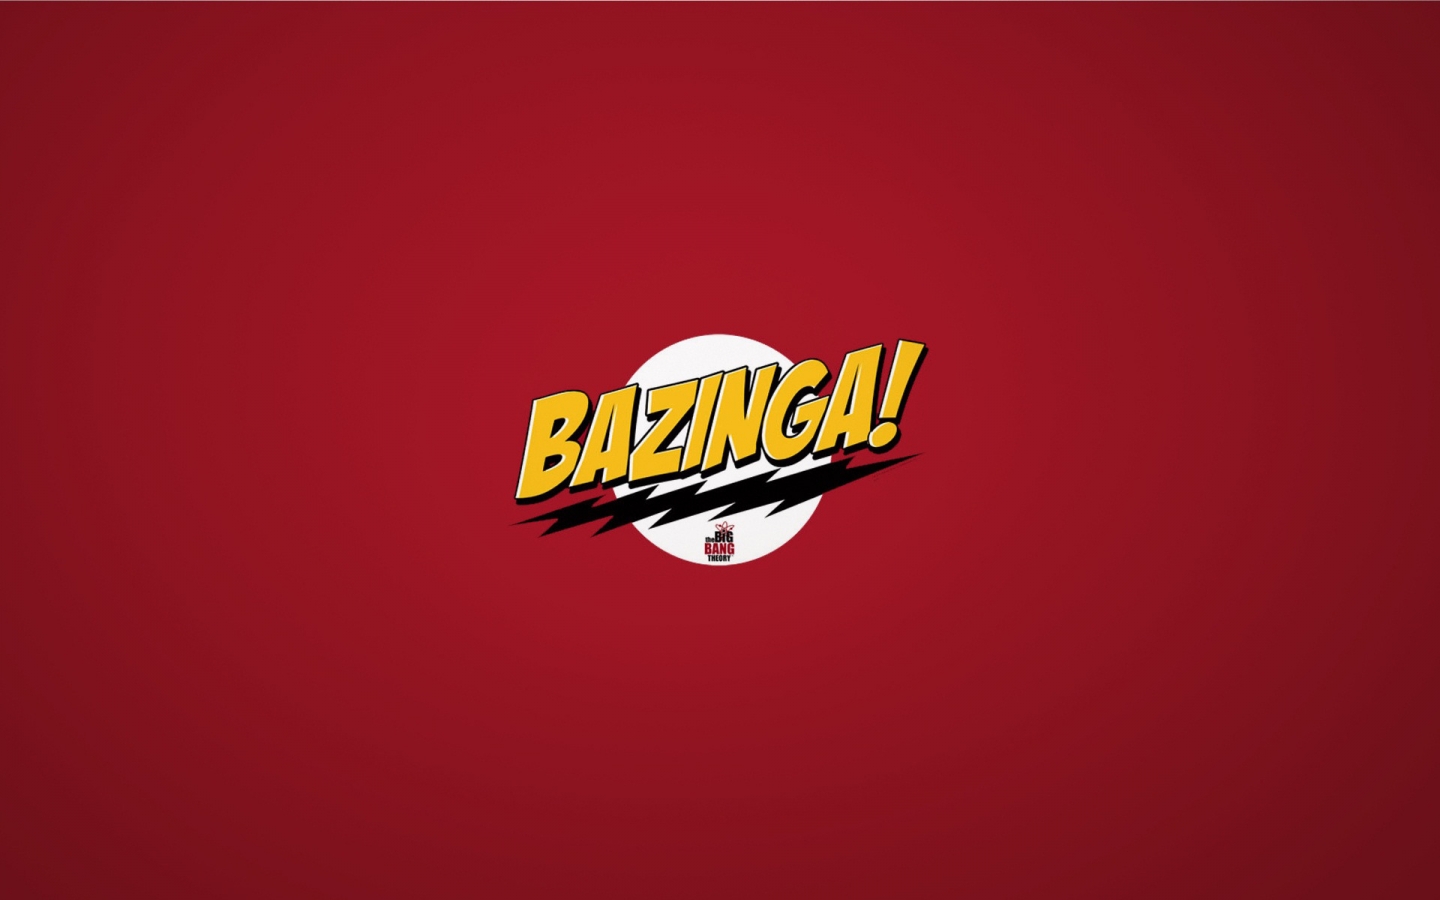 The Big Bang Theory Bazinga for 1440 x 900 widescreen resolution